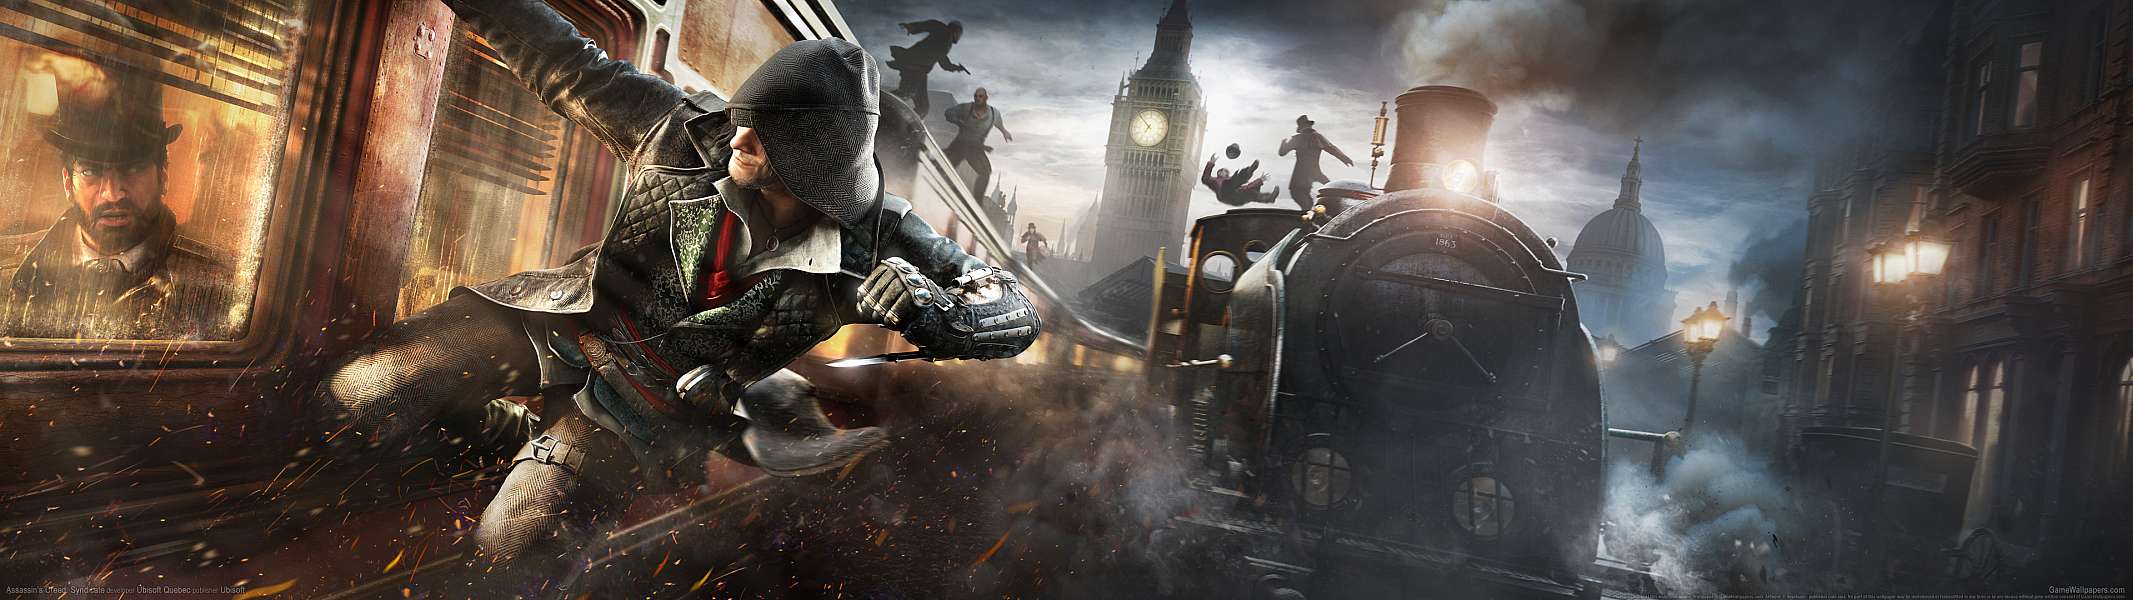 Assassin's Creed: Syndicate dual screen fondo de escritorio